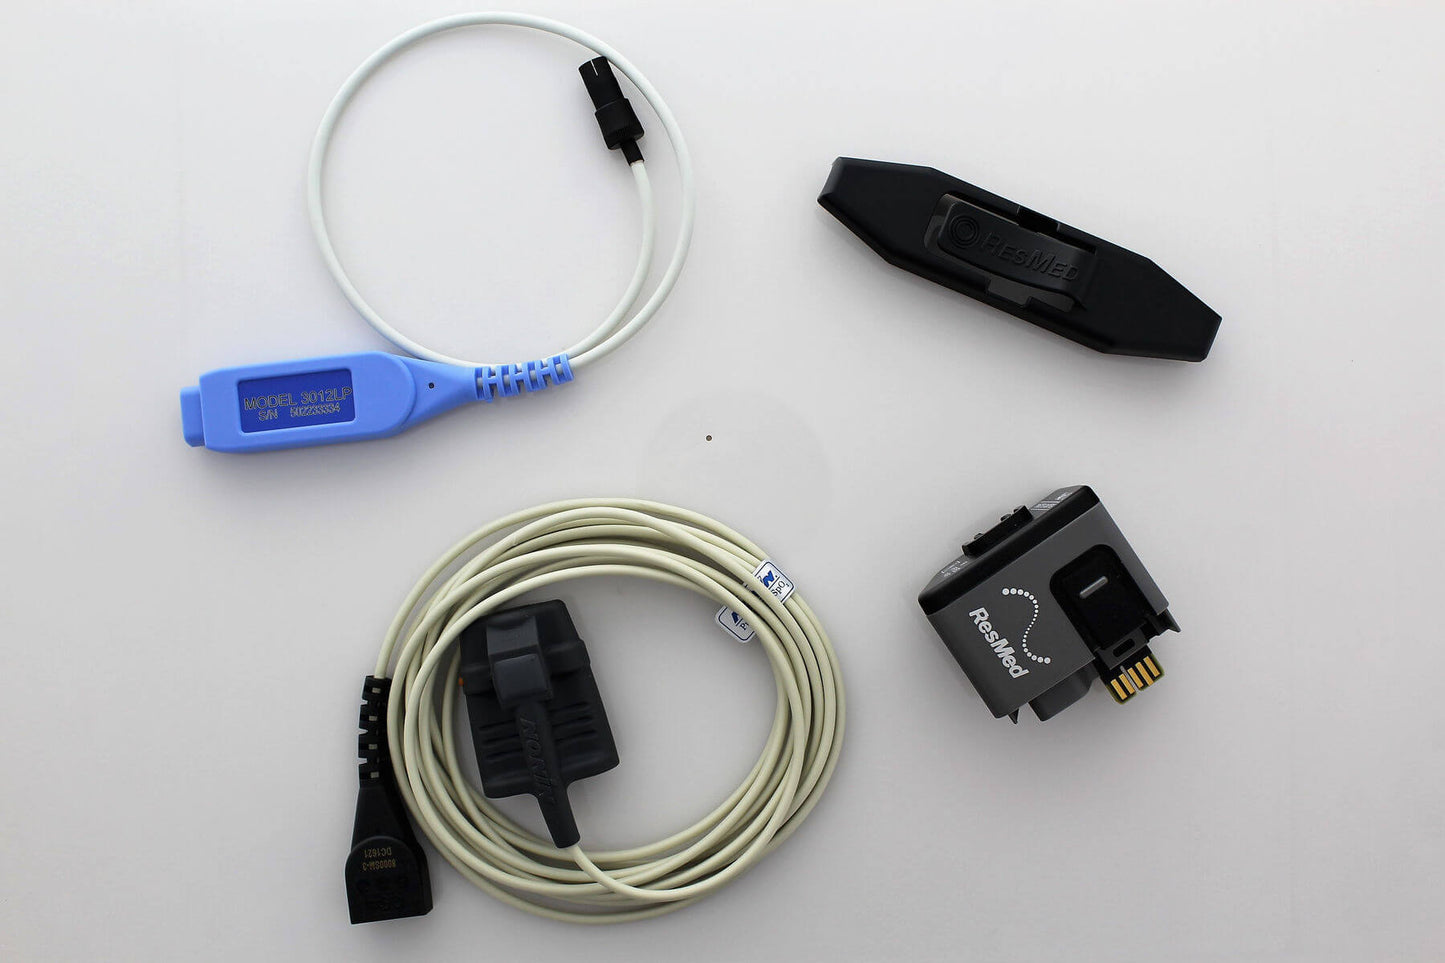 ResMed Pulse Oximeter Module Kit